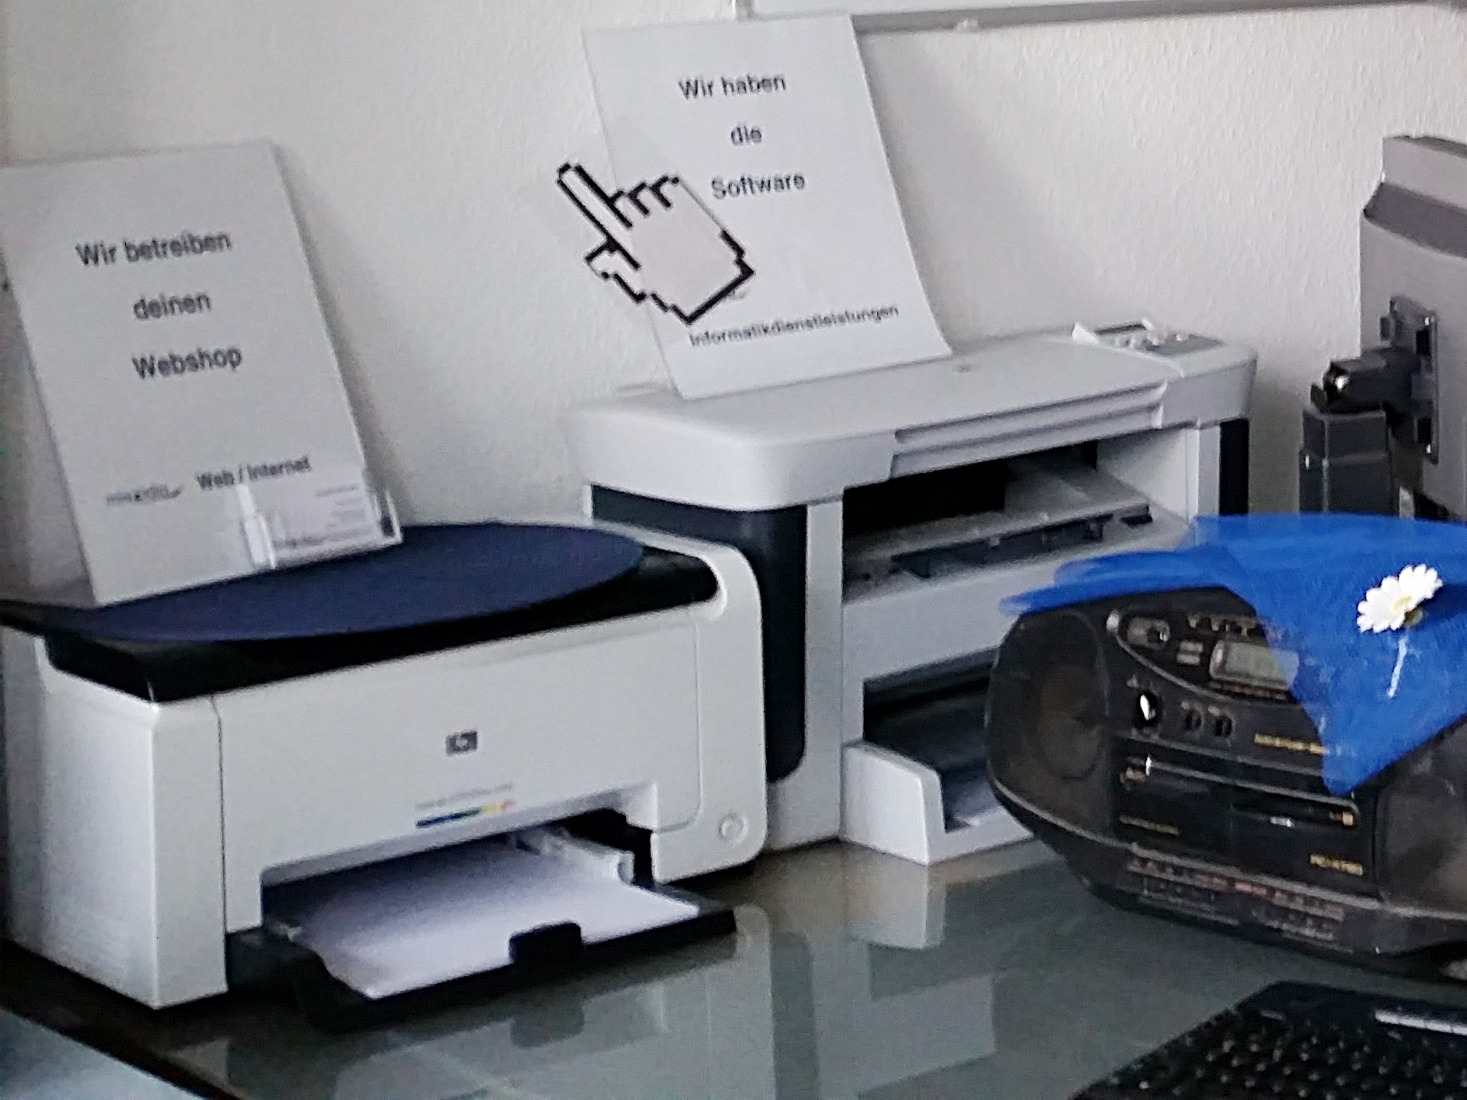 Handelsübliche Drucker für Farbe auf Papier, ein Farb- und ein Schwarz-weiß-Laserdrucker